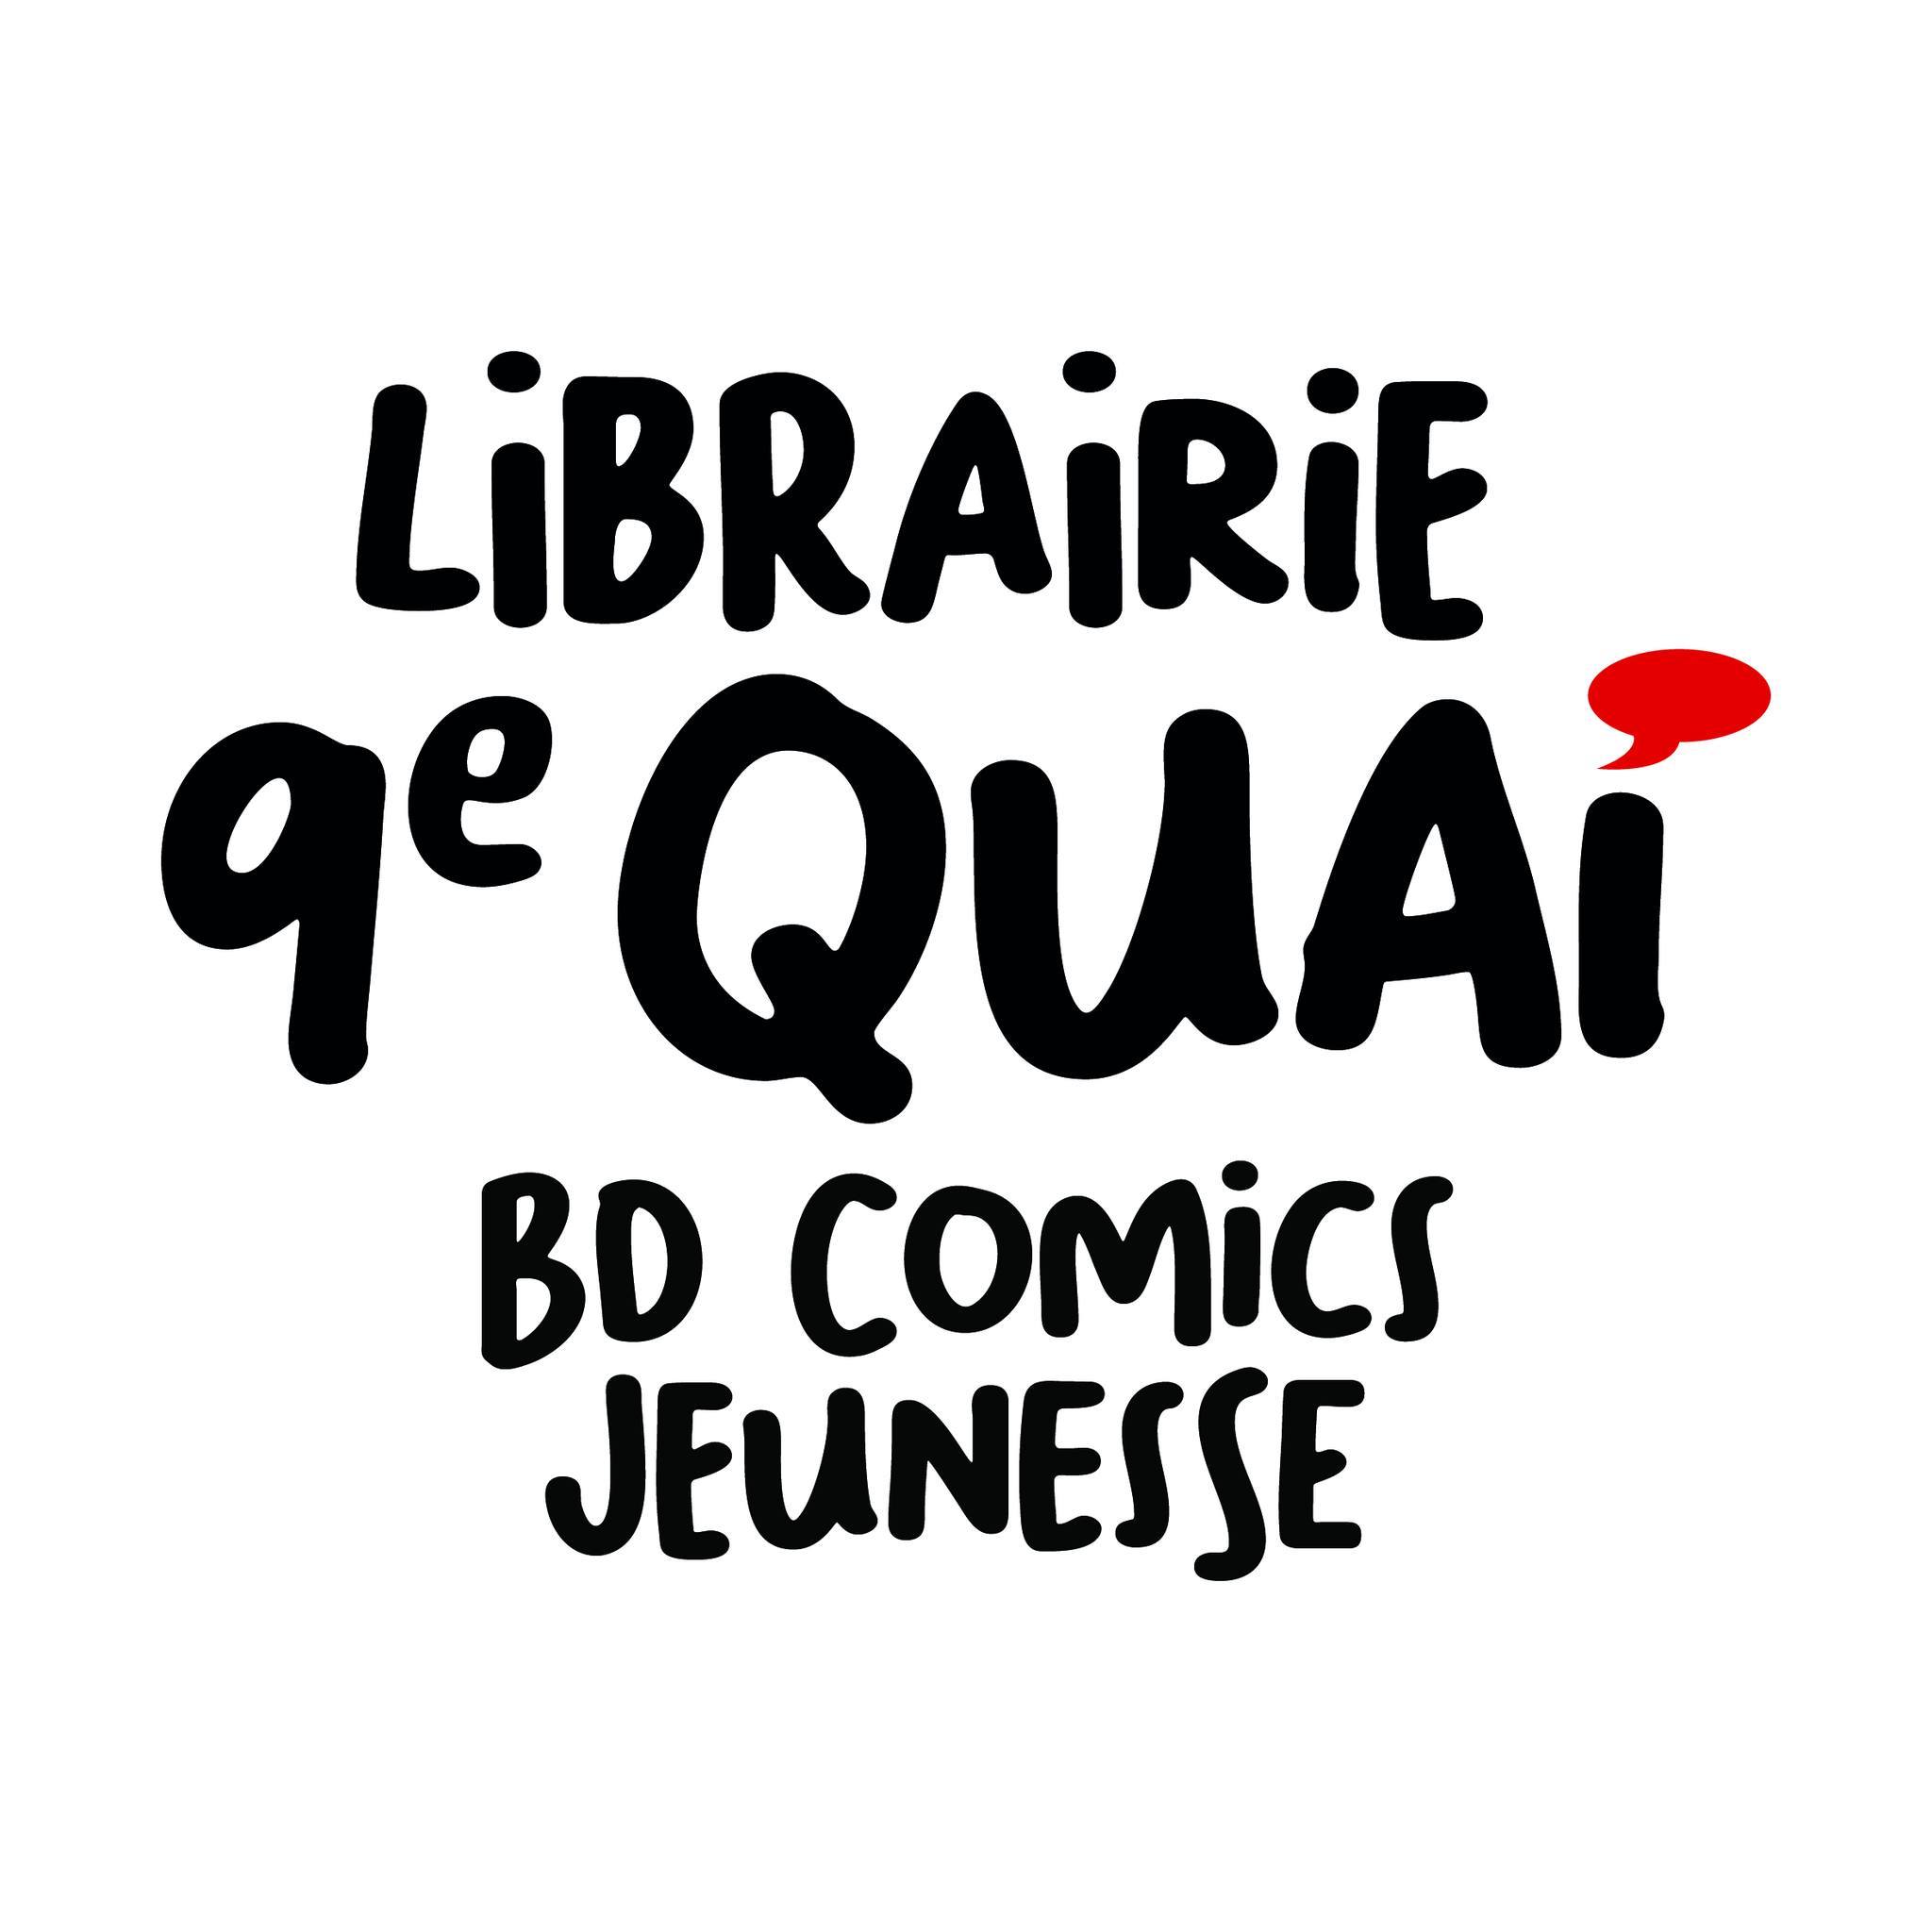 Librairie 9e quai - BD, comics, jeunesse